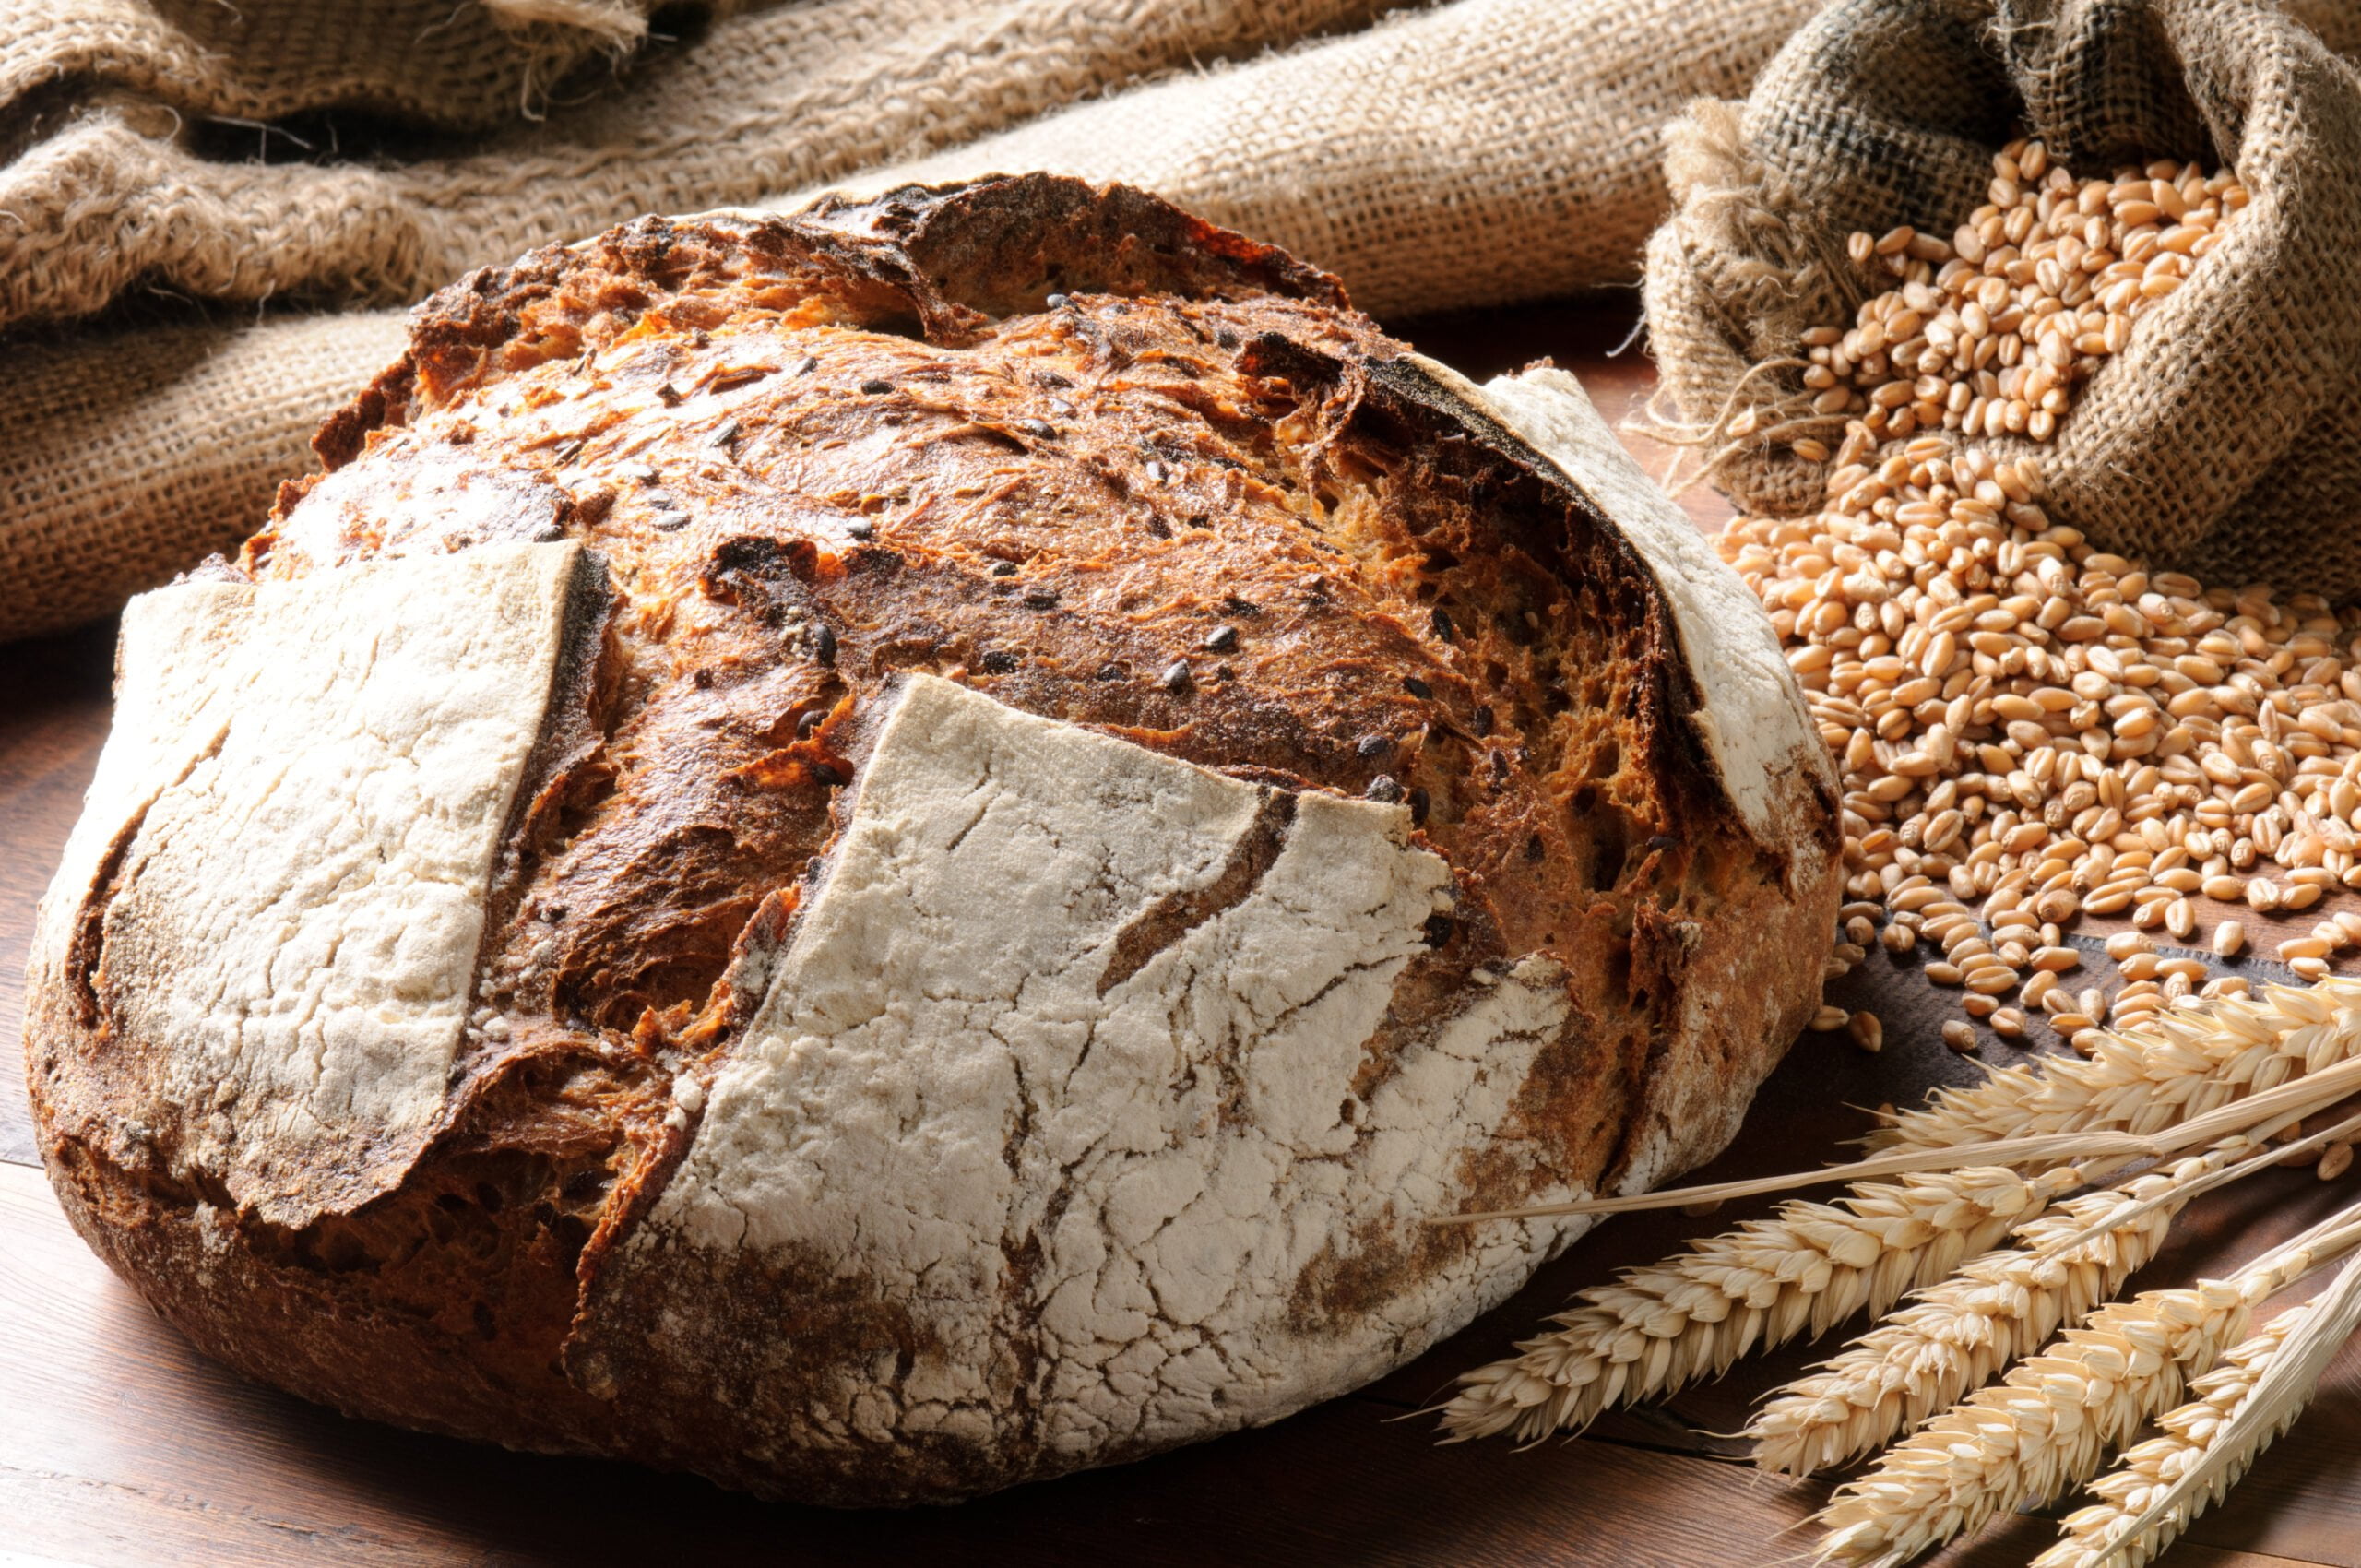 Duży bochenek chleba na drewnianym blacie, obok worka pełnego ziaren pszenicy i kłosów pszenicy na pierwszym planie.